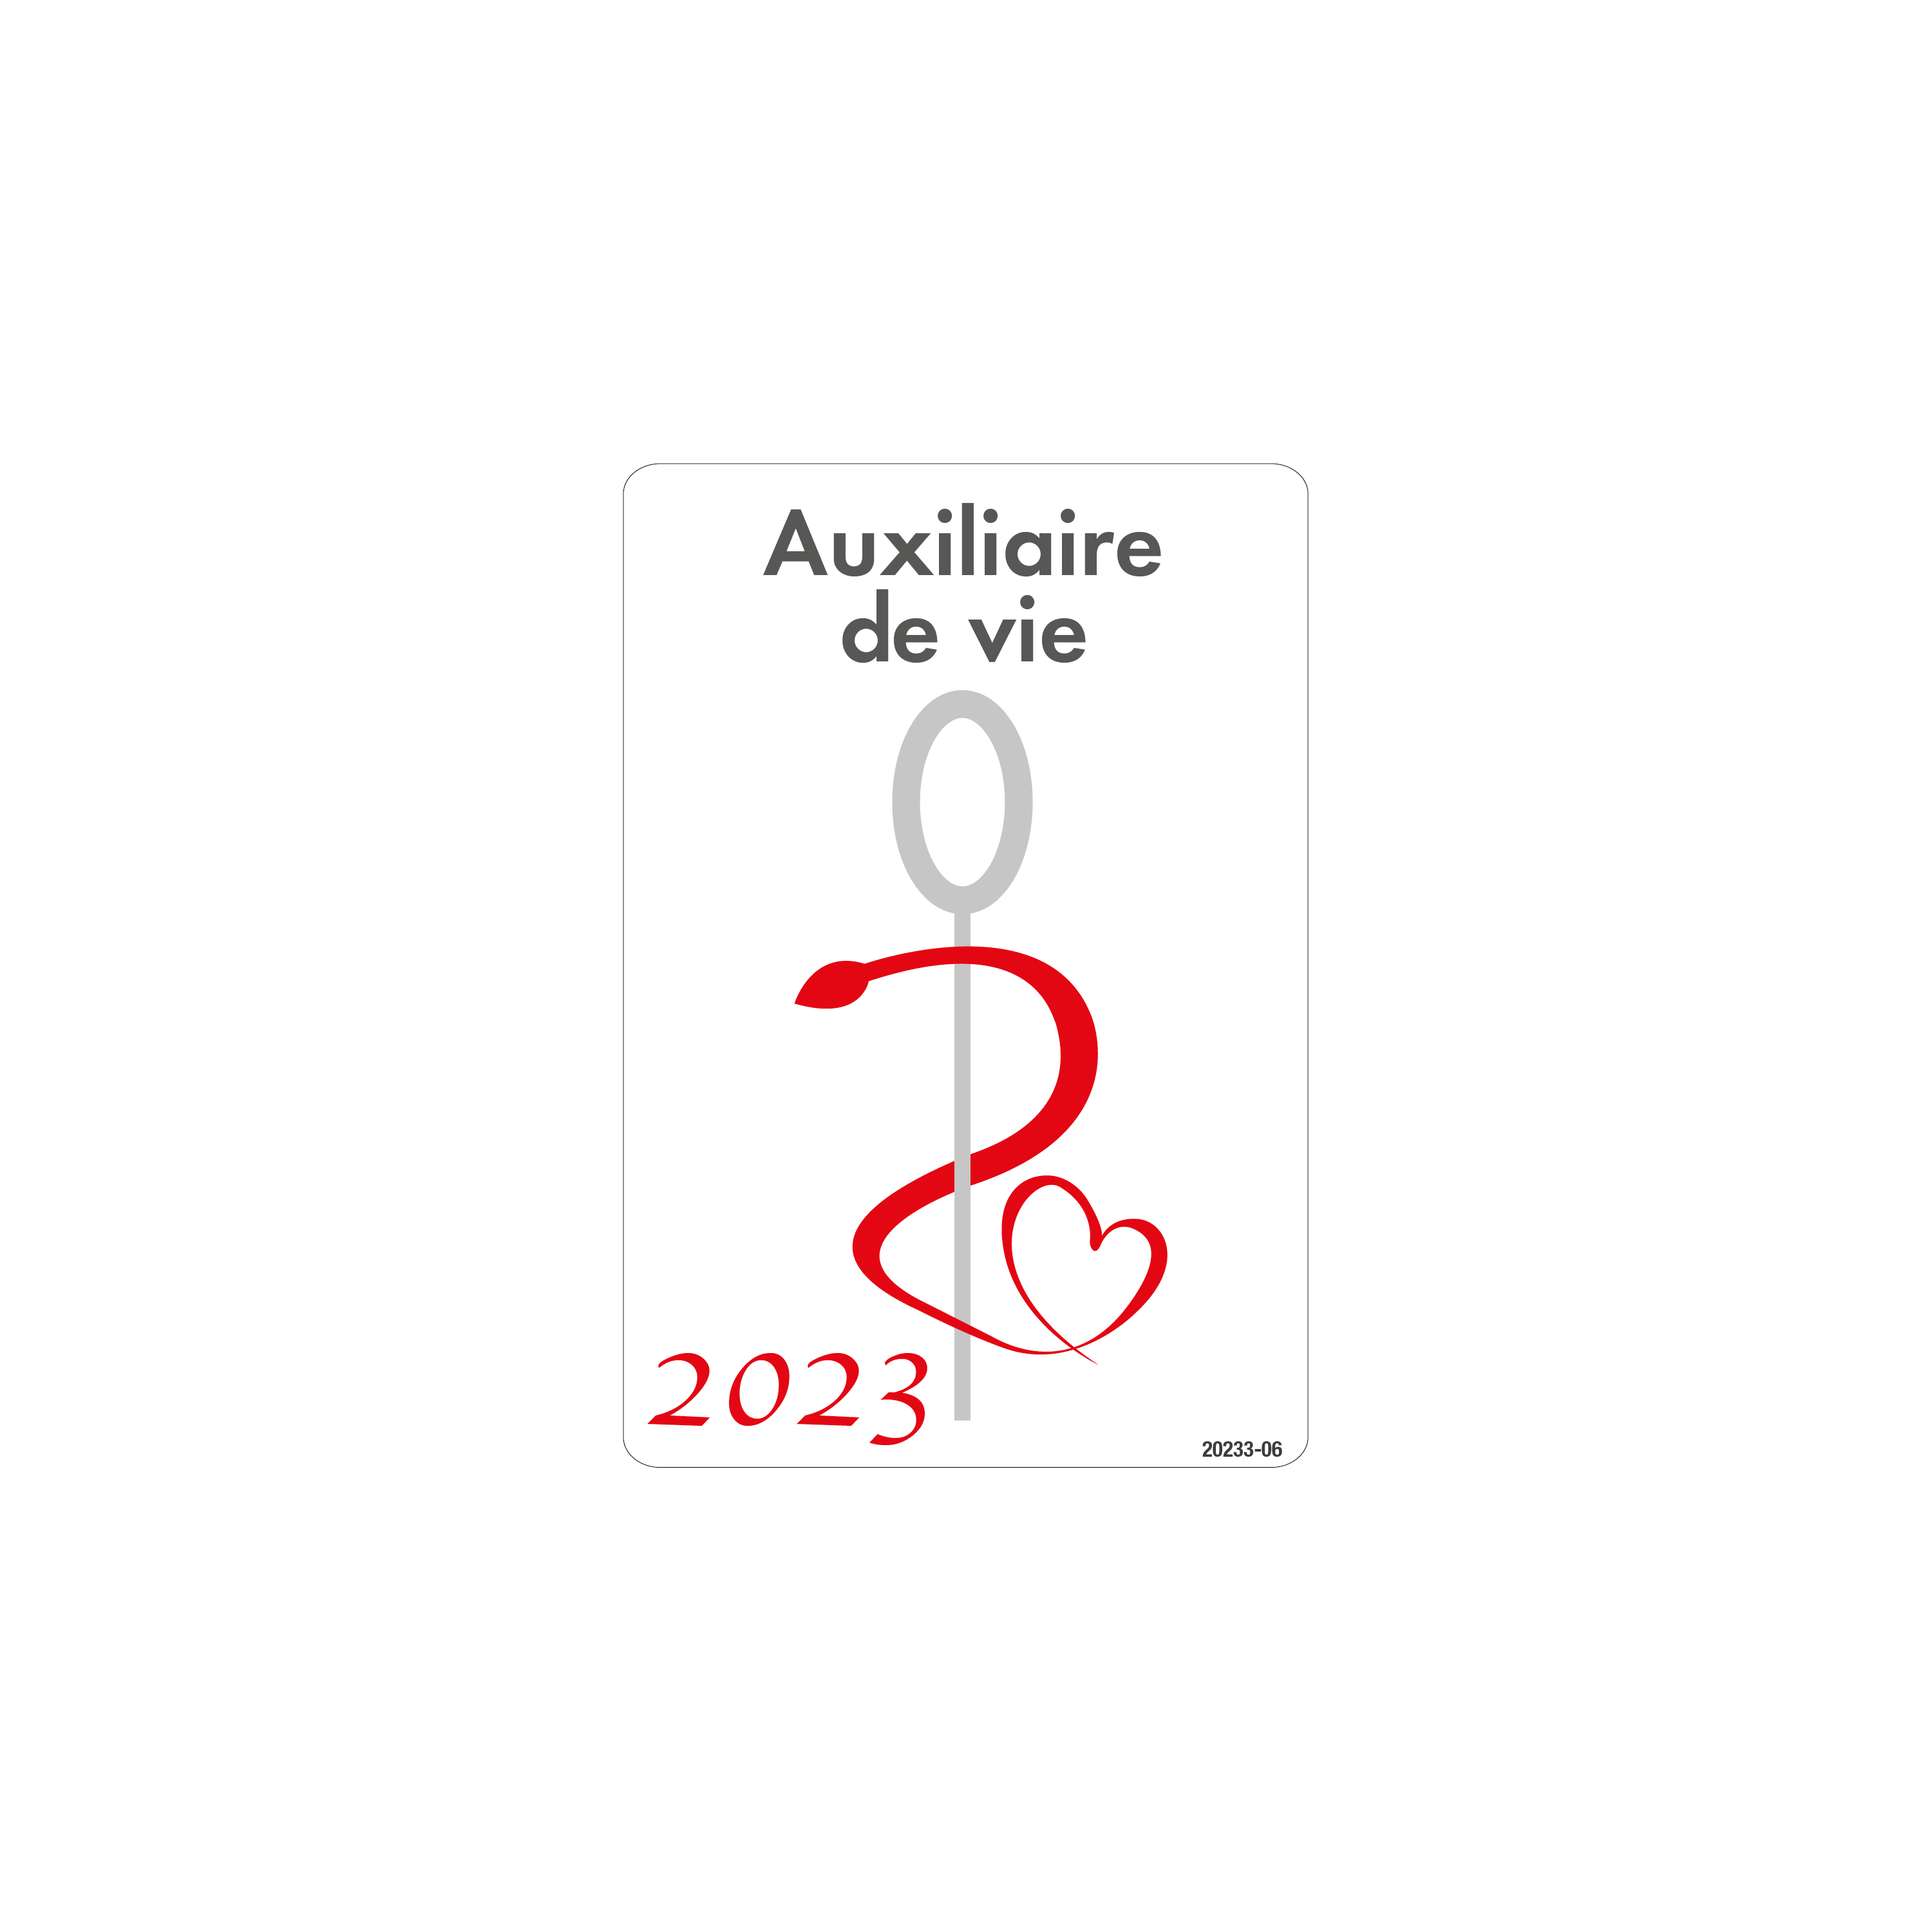 https://static.label-blouse.net/41763-lb_zoom/caducee-auxiliaire-de-vie-2023.jpg